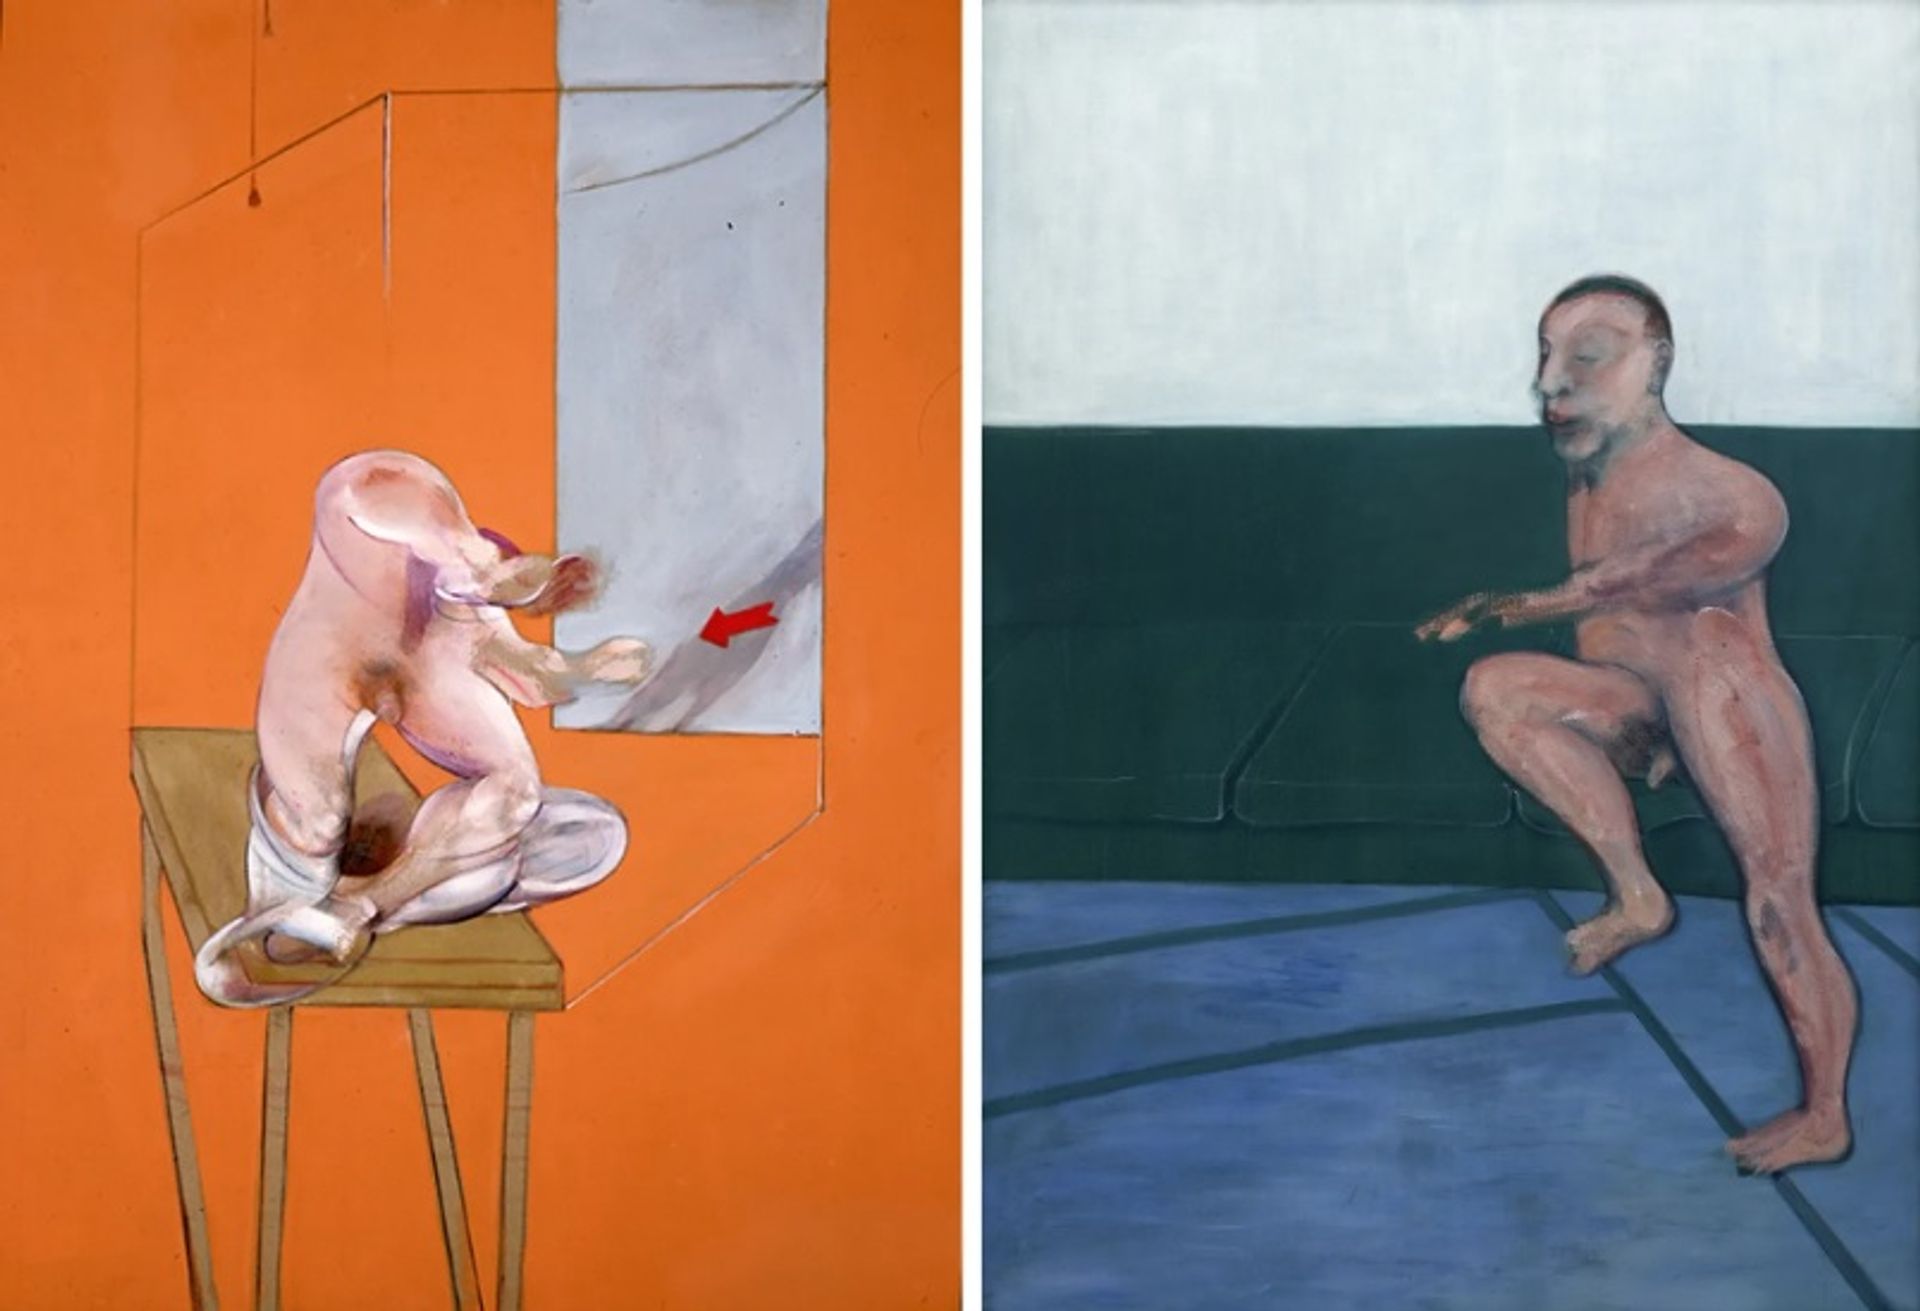 המחקר של פרנסיס בייקון על גוף האדם - דמות בתנועה (1982, שמאל) ודמות יושבת על ספה (1959, ימין) מוצעים שניהם למכירה ב-Frieze Masters

משמאל: באדיבות "מרלבורו", מימין: באדיבות Skarstedt